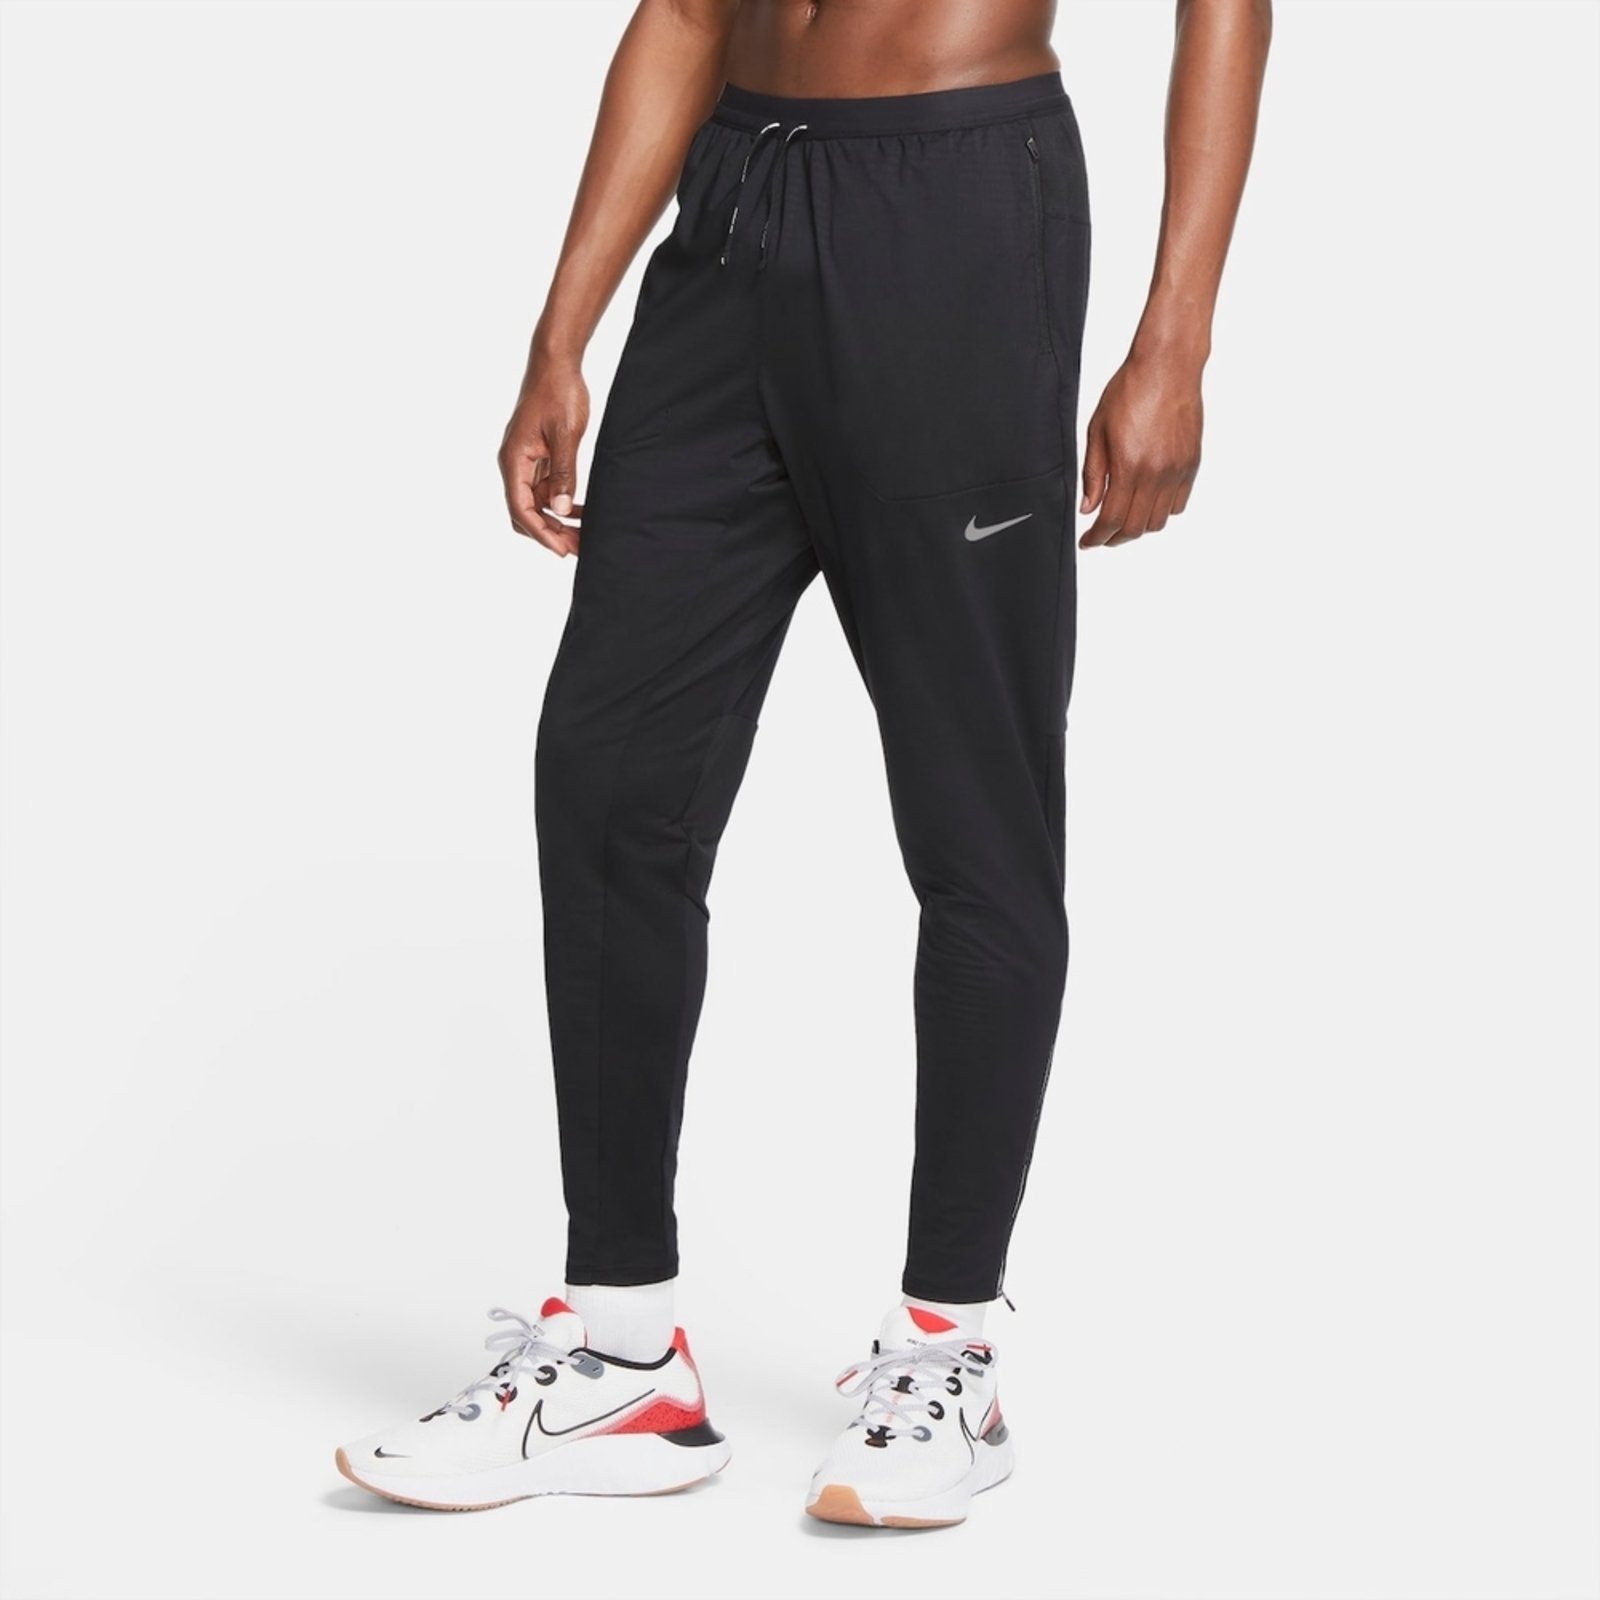 Calça Nike Phenom Elite Masculina - Compre Agora